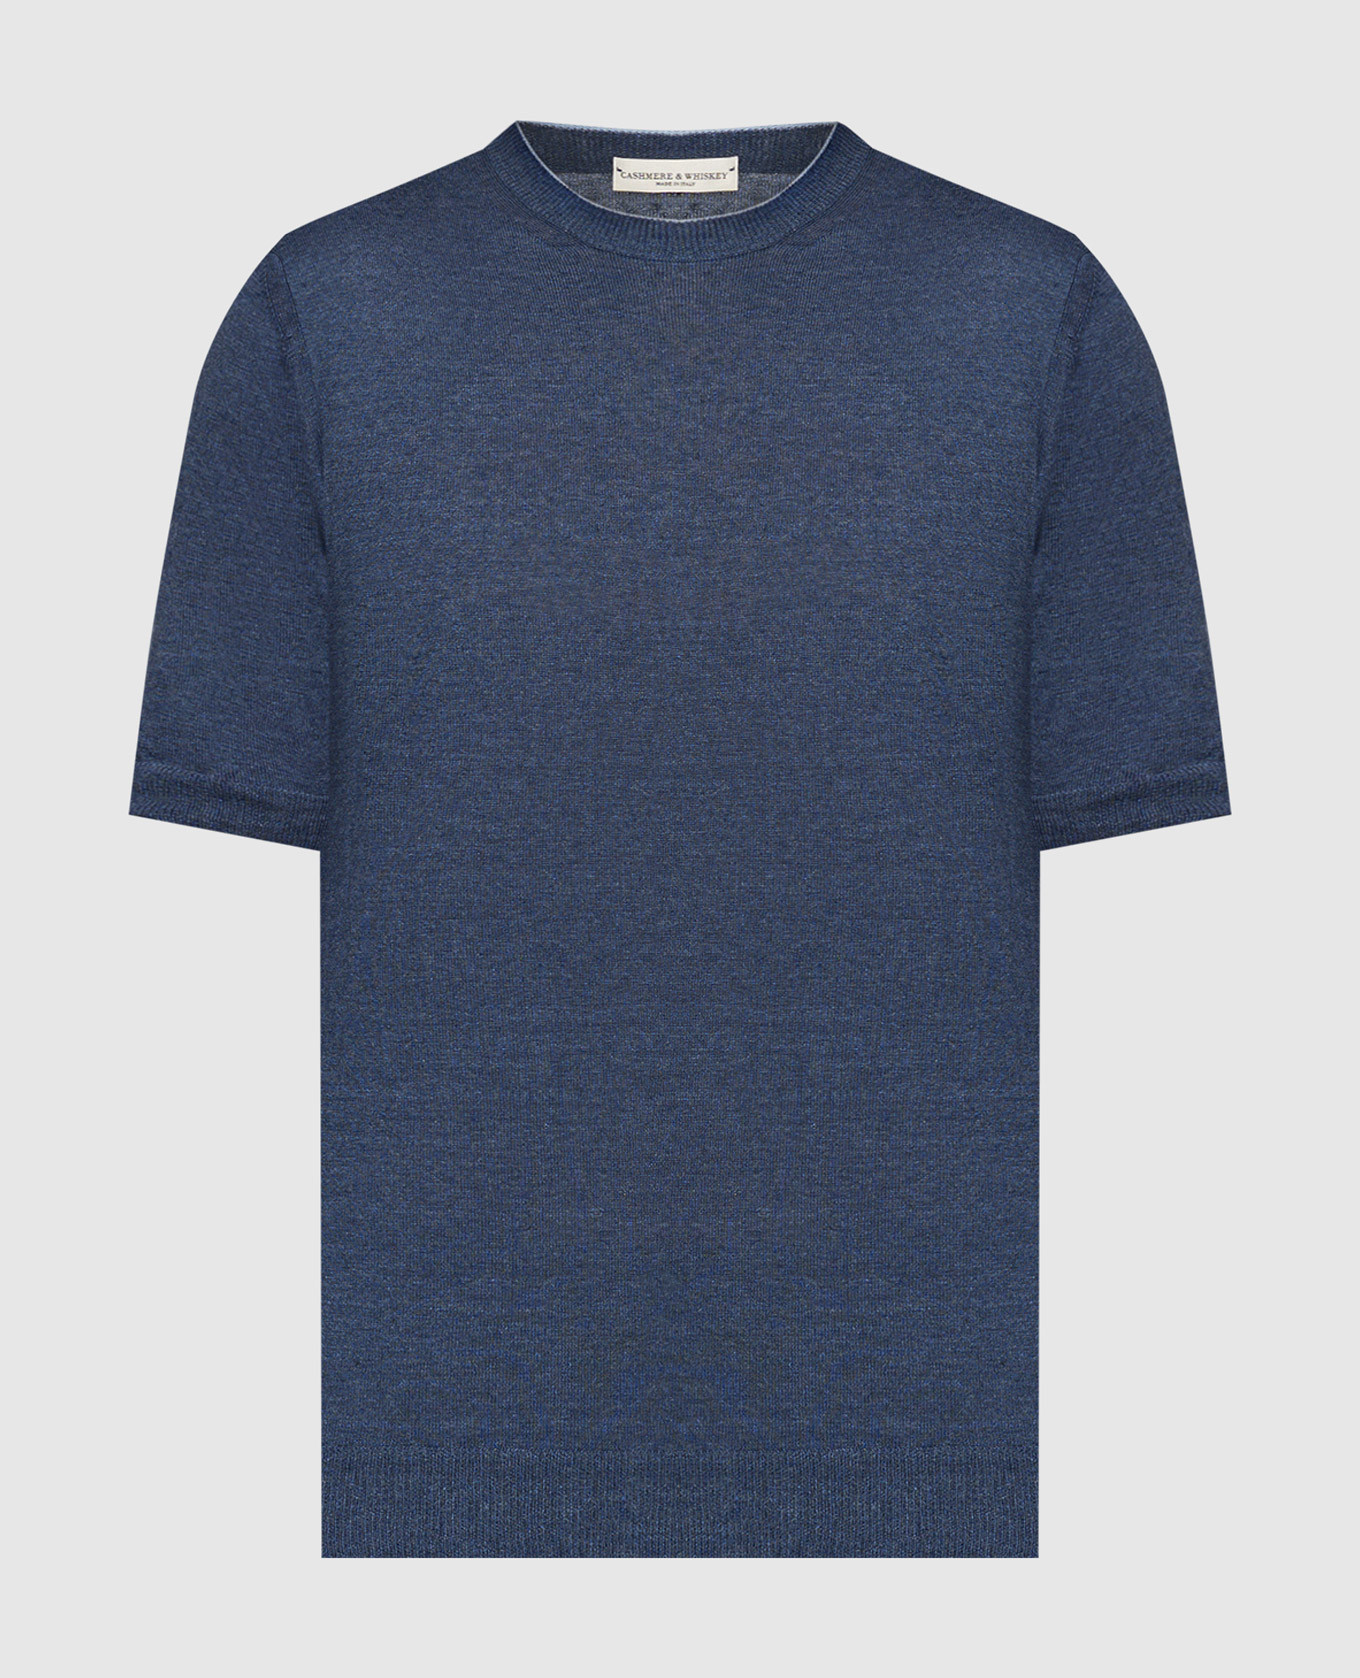 Синяя футболка с леном и кашемиром